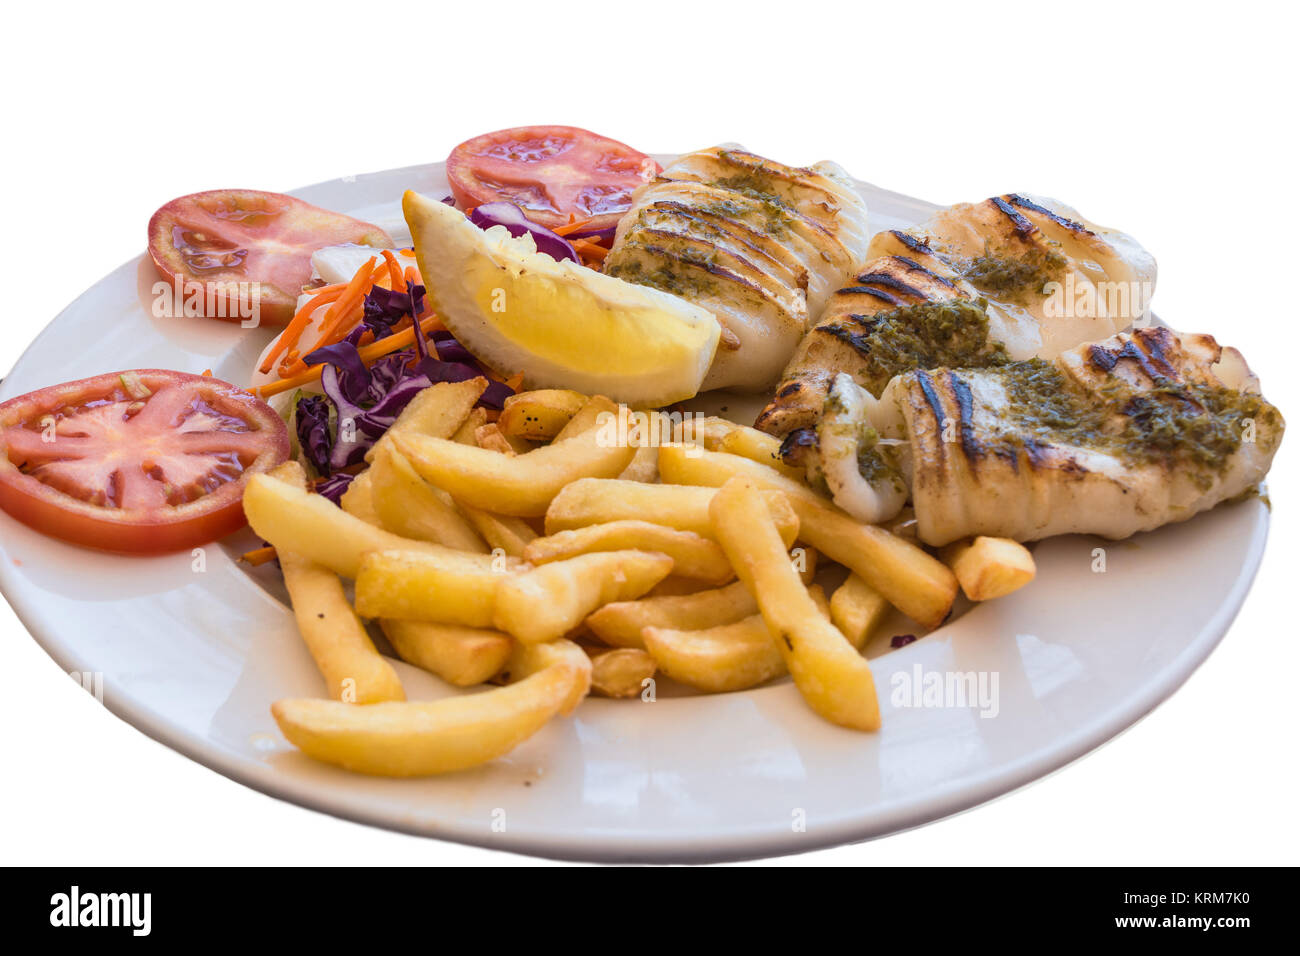 Gegrillten Oktopus. Gegrillter Tintenfisch serviert mit Pommes frittes und Zitronen und Salat. Stock Photo